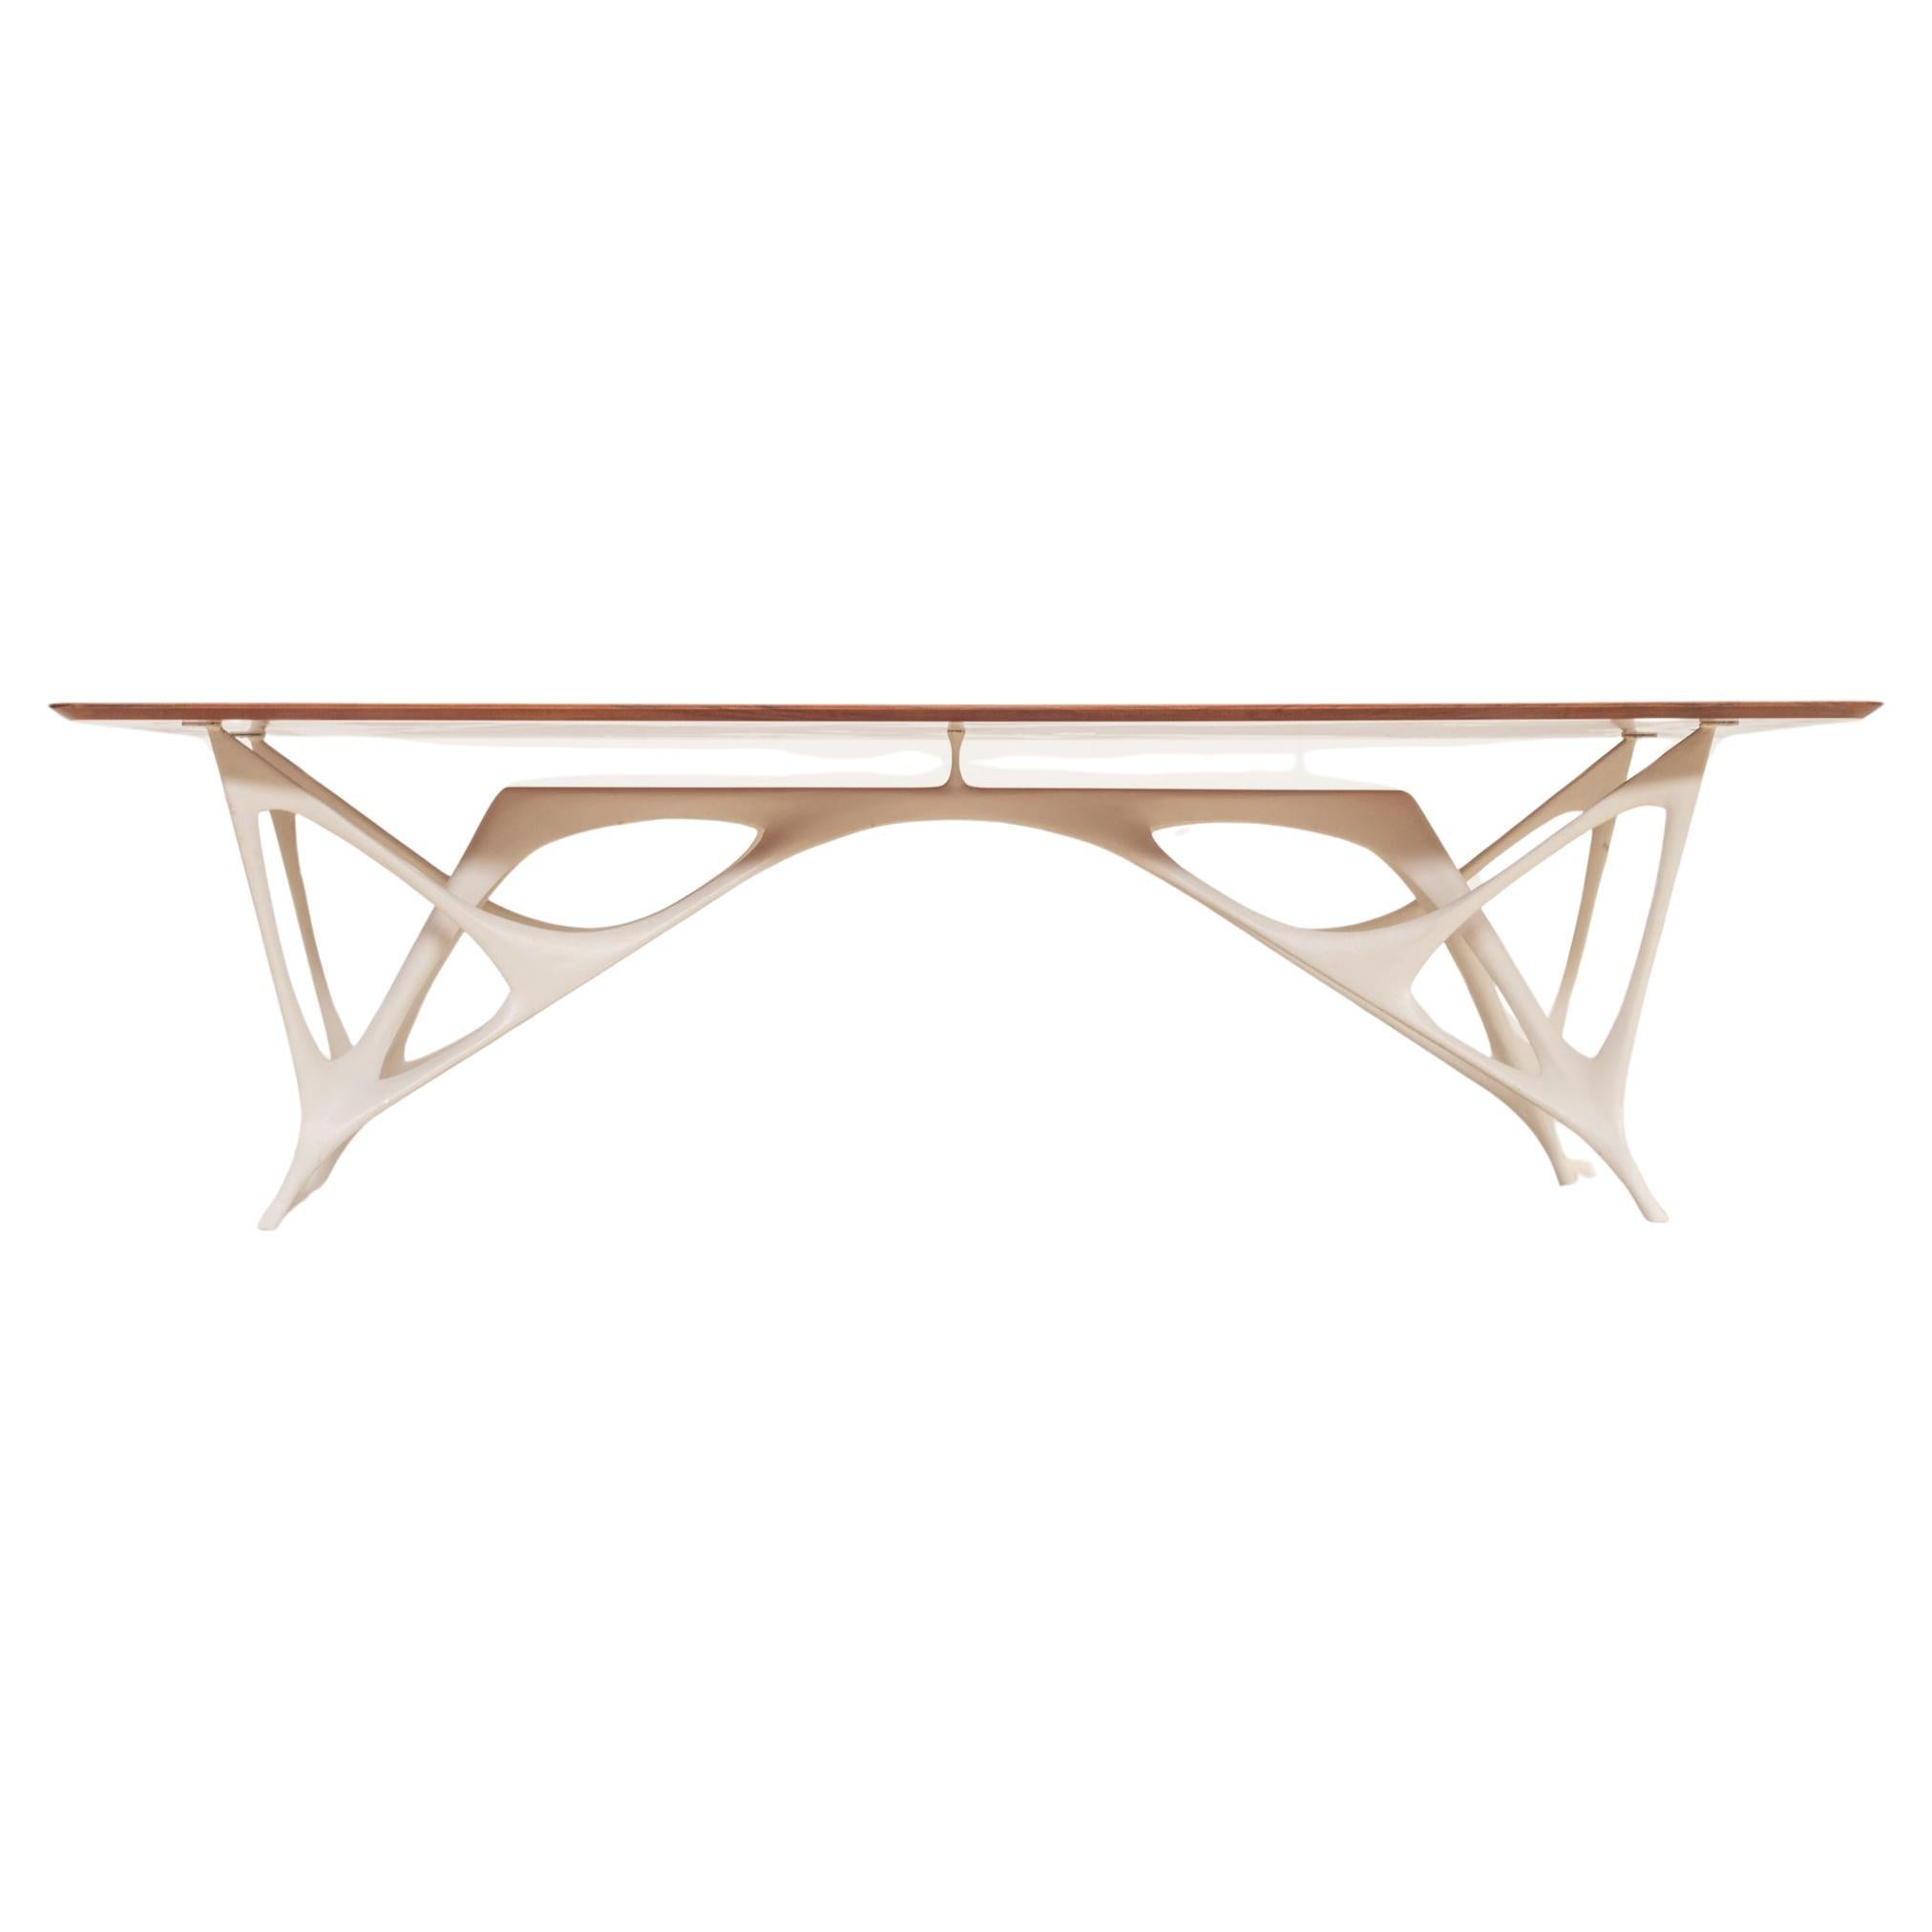 Architectural table by Le Opere e i Giorni studio